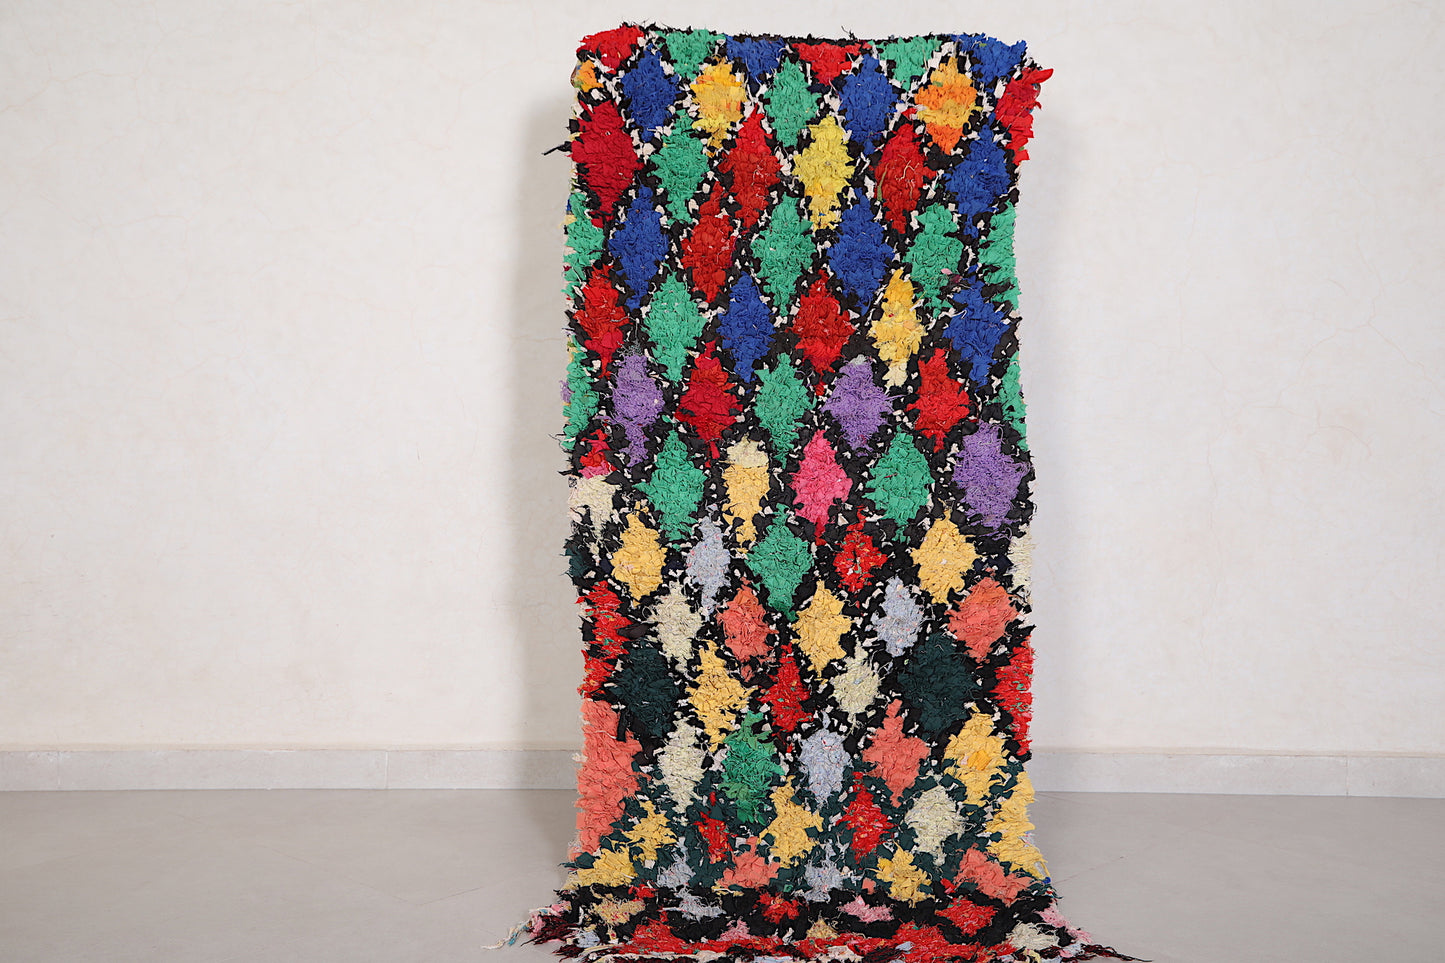 Runner Moroccan Boucherouite rug 2.4 X 5.3 Feet